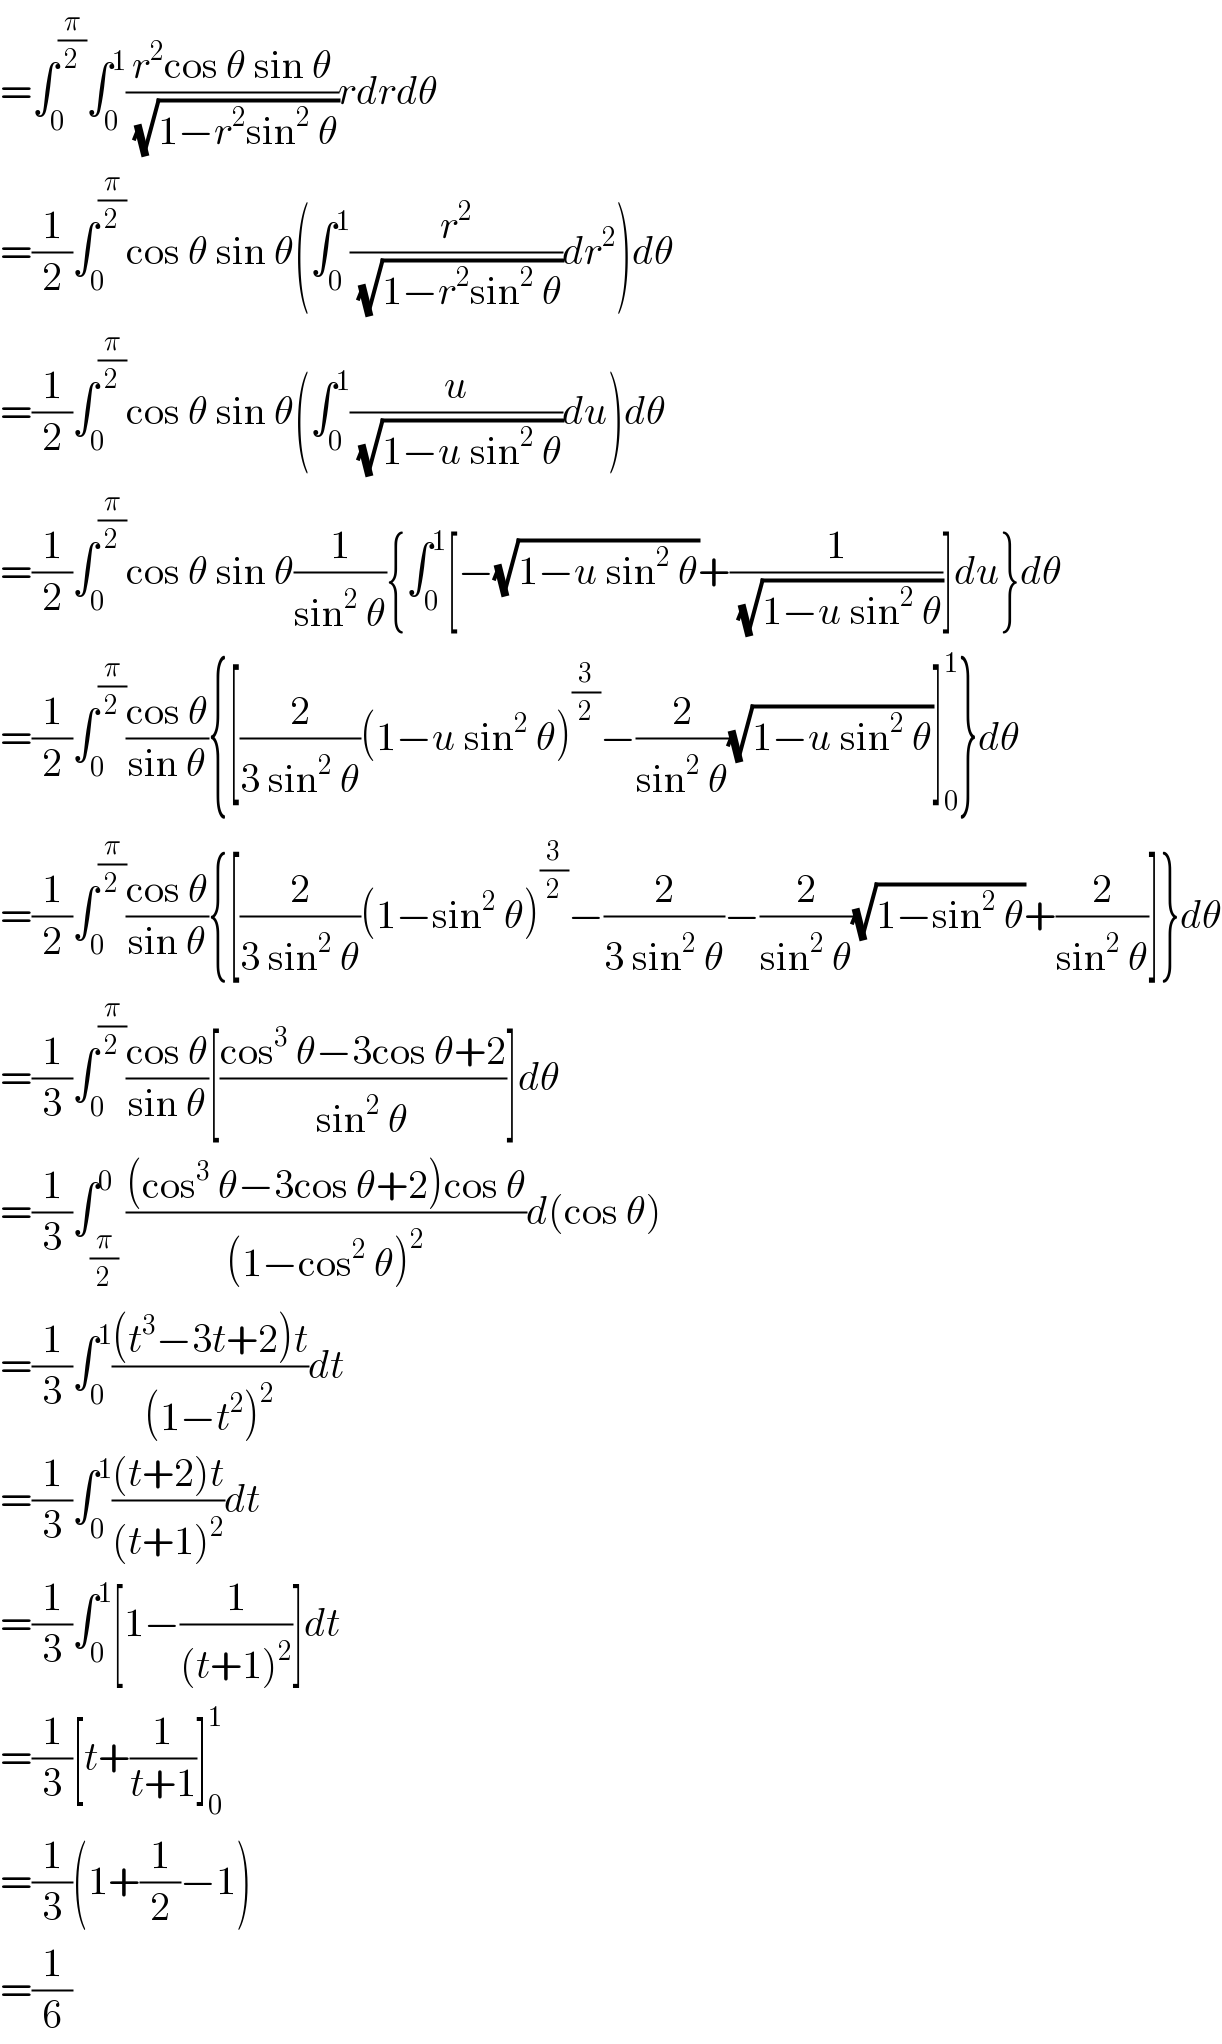 =∫_0 ^(π/2) ∫_0 ^1 ((r^2 cos θ sin θ)/(√(1−r^2 sin^2  θ)))rdrdθ  =(1/2)∫_0 ^(π/2) cos θ sin θ(∫_0 ^1 (r^2 /(√(1−r^2 sin^2  θ)))dr^2 )dθ  =(1/2)∫_0 ^(π/2) cos θ sin θ(∫_0 ^1 (u/(√(1−u sin^2  θ)))du)dθ  =(1/2)∫_0 ^(π/2) cos θ sin θ(1/(sin^2  θ)){∫_0 ^1 [−(√(1−u sin^2  θ))+(1/(√(1−u sin^2  θ)))]du}dθ  =(1/2)∫_0 ^(π/2) ((cos θ)/(sin θ)){[(2/(3 sin^2  θ))(1−u sin^2  θ)^(3/2) −(2/(sin^2  θ))(√(1−u sin^2  θ))]_0 ^1 }dθ  =(1/2)∫_0 ^(π/2) ((cos θ)/(sin θ)){[(2/(3 sin^2  θ))(1−sin^2  θ)^(3/2) −(2/(3 sin^2  θ))−(2/(sin^2  θ))(√(1−sin^2  θ))+(2/(sin^2  θ))]}dθ  =(1/3)∫_0 ^(π/2) ((cos θ)/(sin θ))[((cos^3  θ−3cos θ+2)/(sin^2  θ))]dθ  =(1/3)∫_(π/2) ^0 (((cos^3  θ−3cos θ+2)cos θ)/((1−cos^2  θ)^2 ))d(cos θ)  =(1/3)∫_0 ^1 (((t^3 −3t+2)t)/((1−t^2 )^2 ))dt  =(1/3)∫_0 ^1 (((t+2)t)/((t+1)^2 ))dt  =(1/3)∫_0 ^1 [1−(1/((t+1)^2 ))]dt  =(1/3)[t+(1/(t+1))]_0 ^1   =(1/3)(1+(1/2)−1)  =(1/6)  